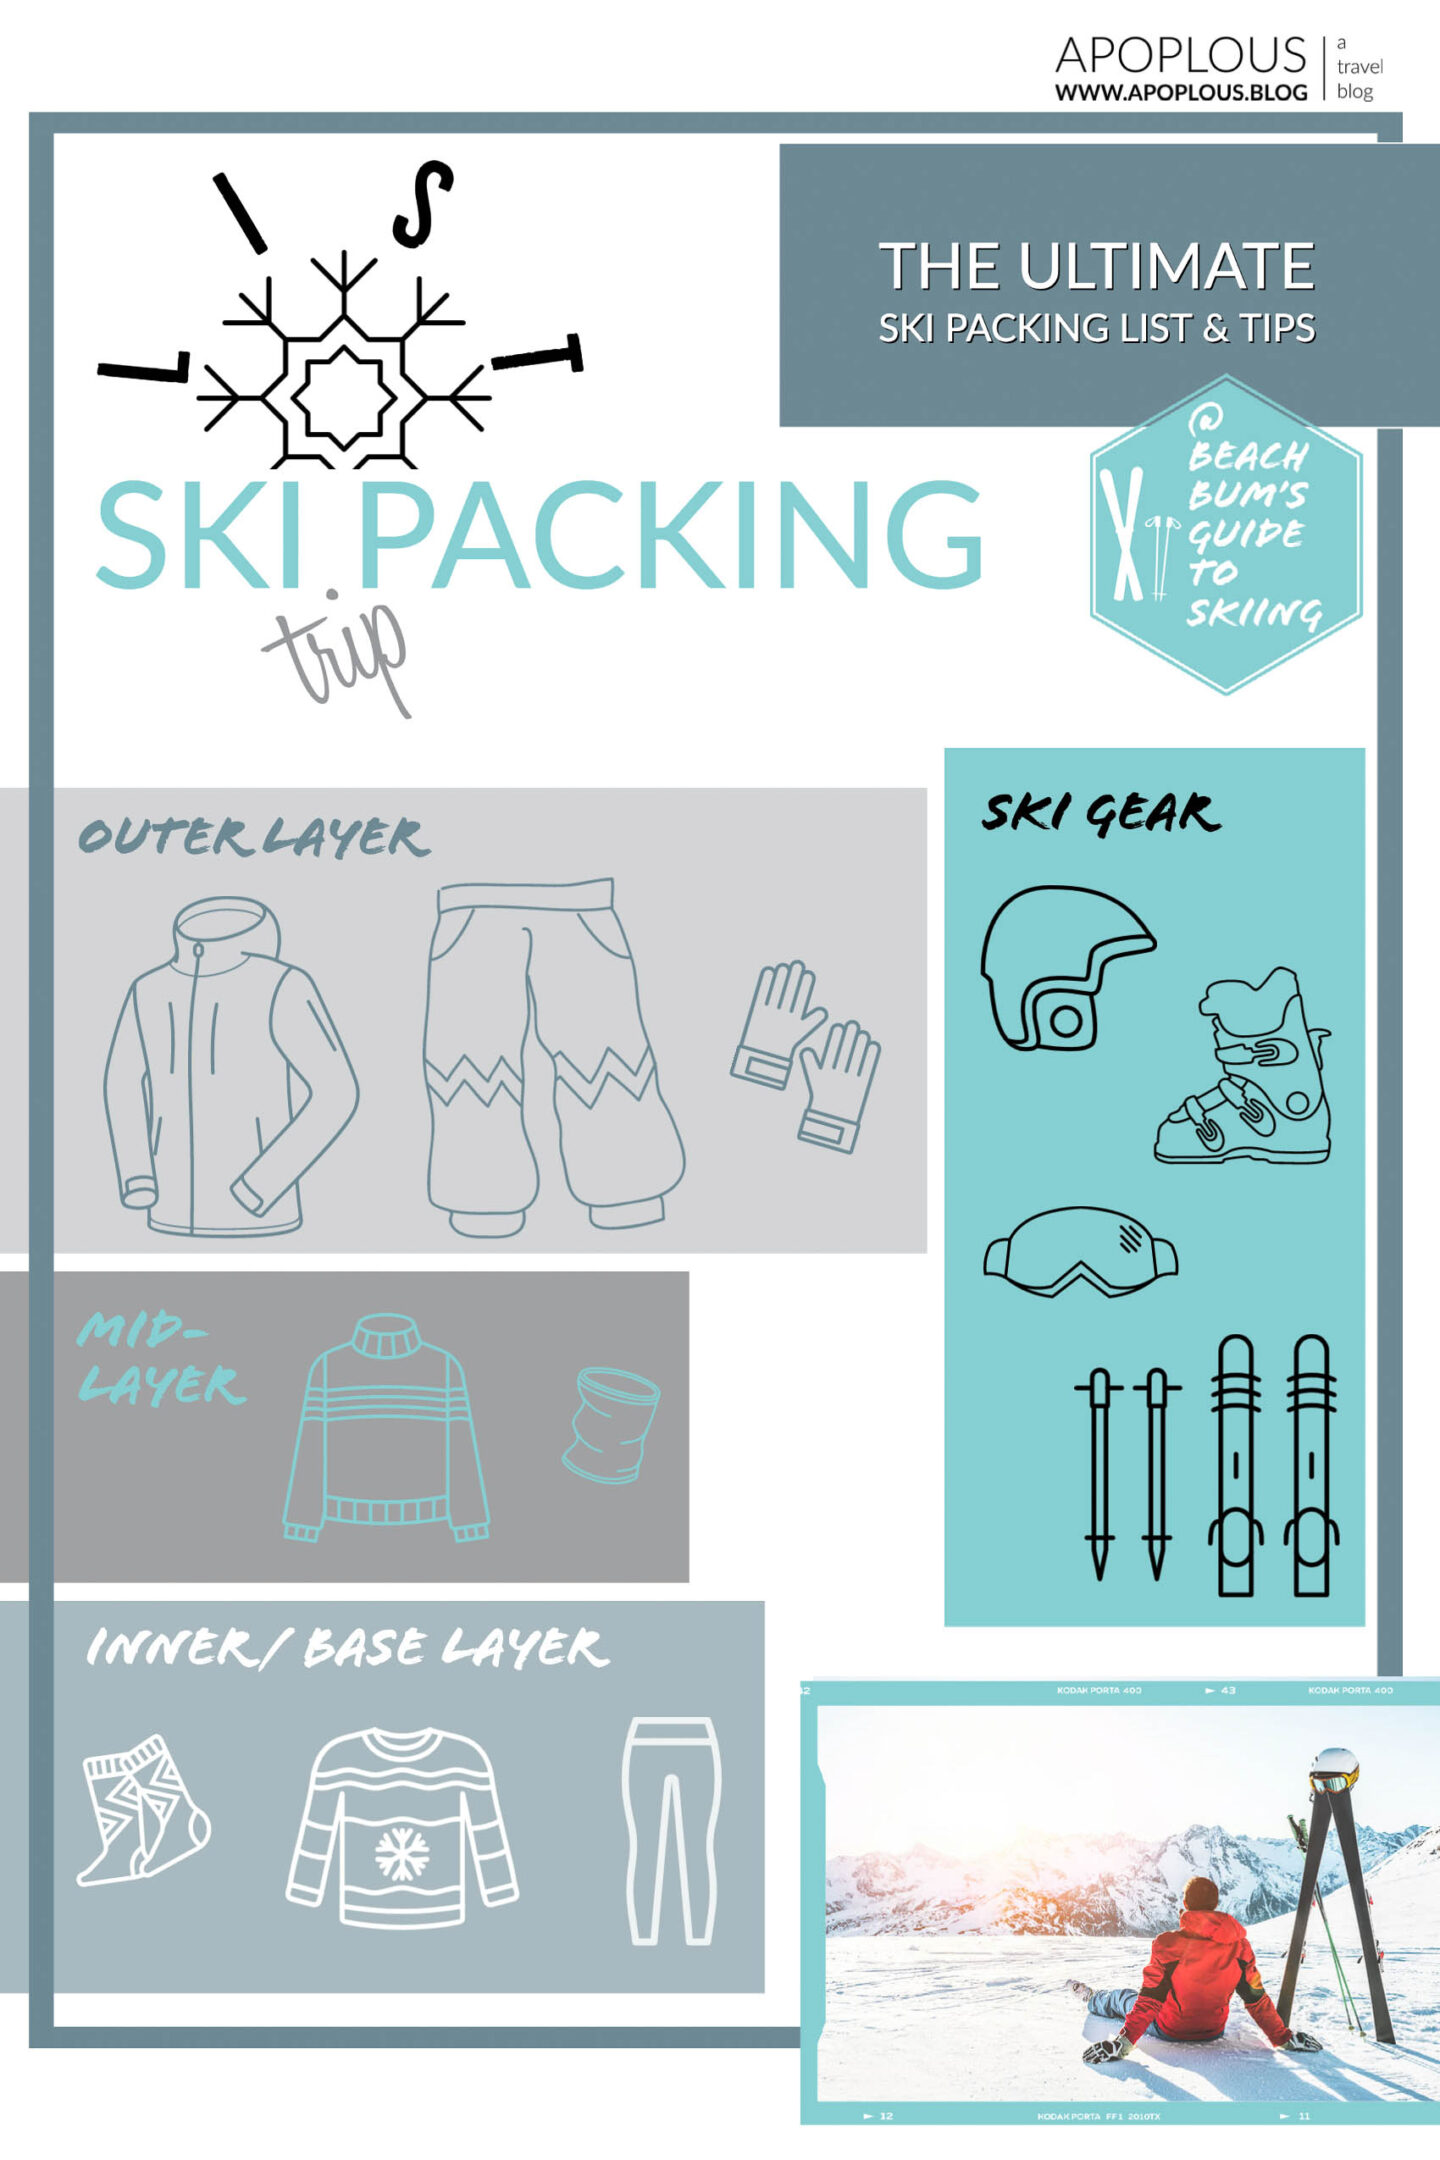 Beach Bums ski packing list